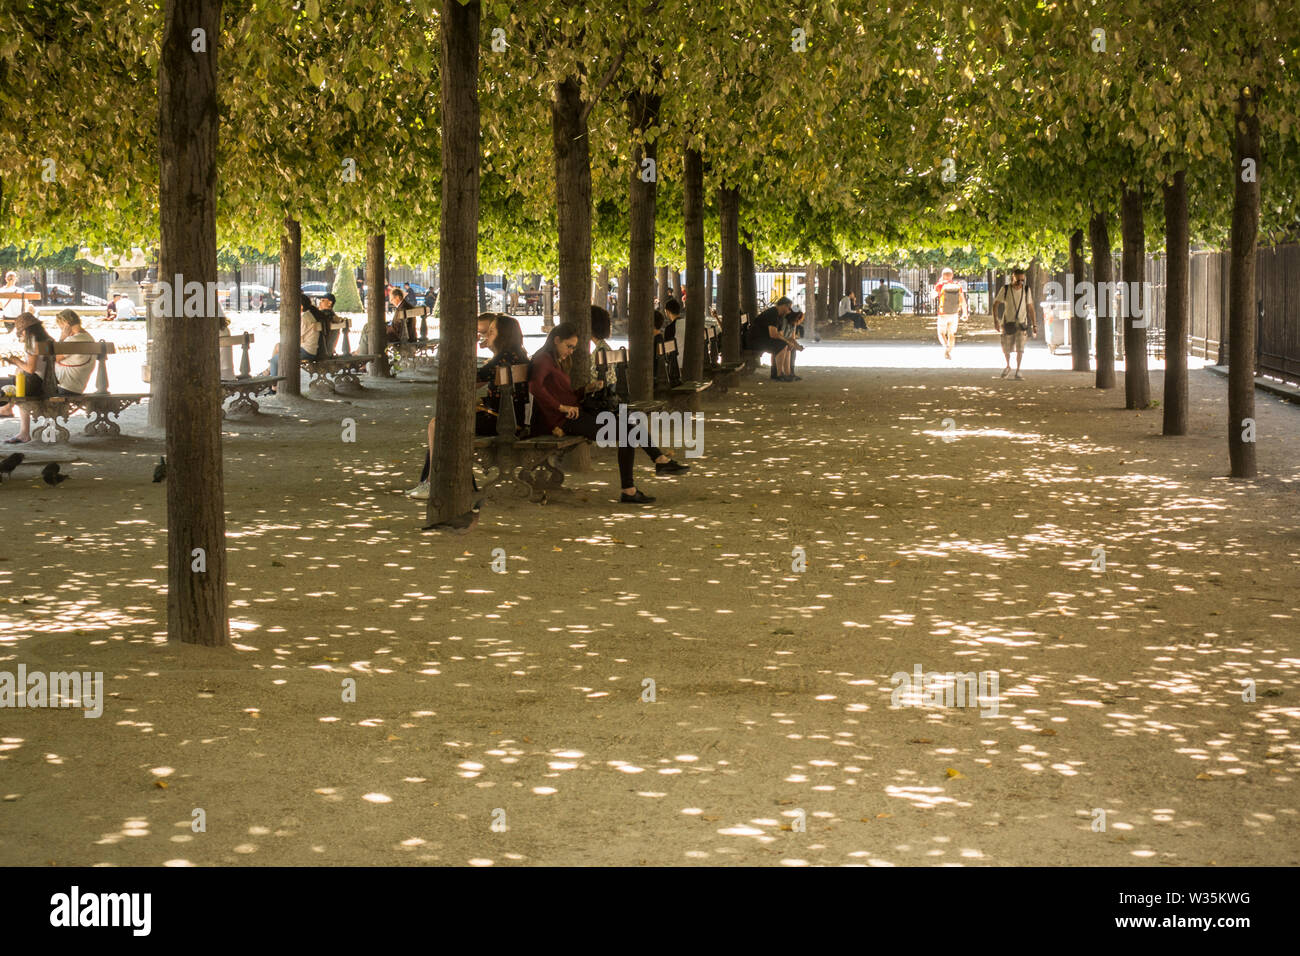 Tourists in summer heat wave at, Place de vosges, Paris, France. Stock Photo